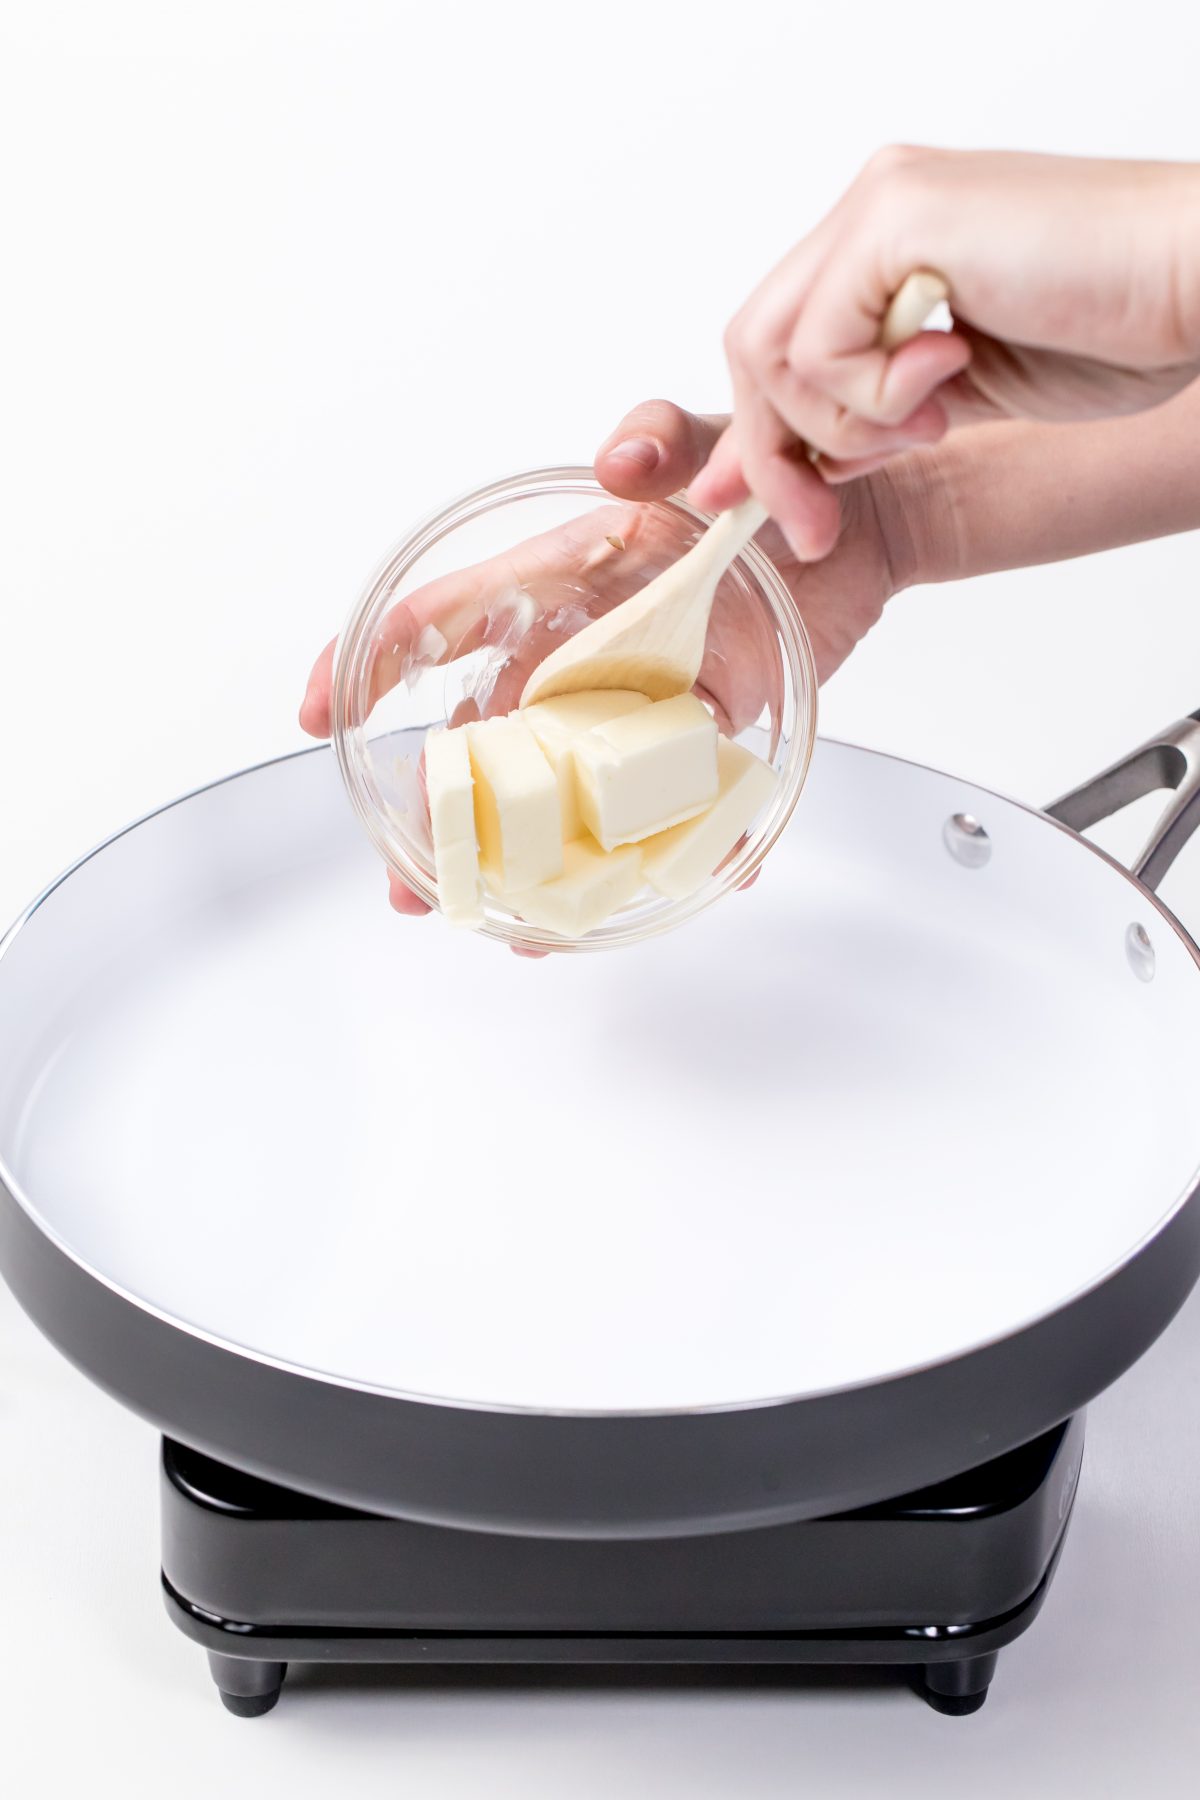 Add butter to saucepan